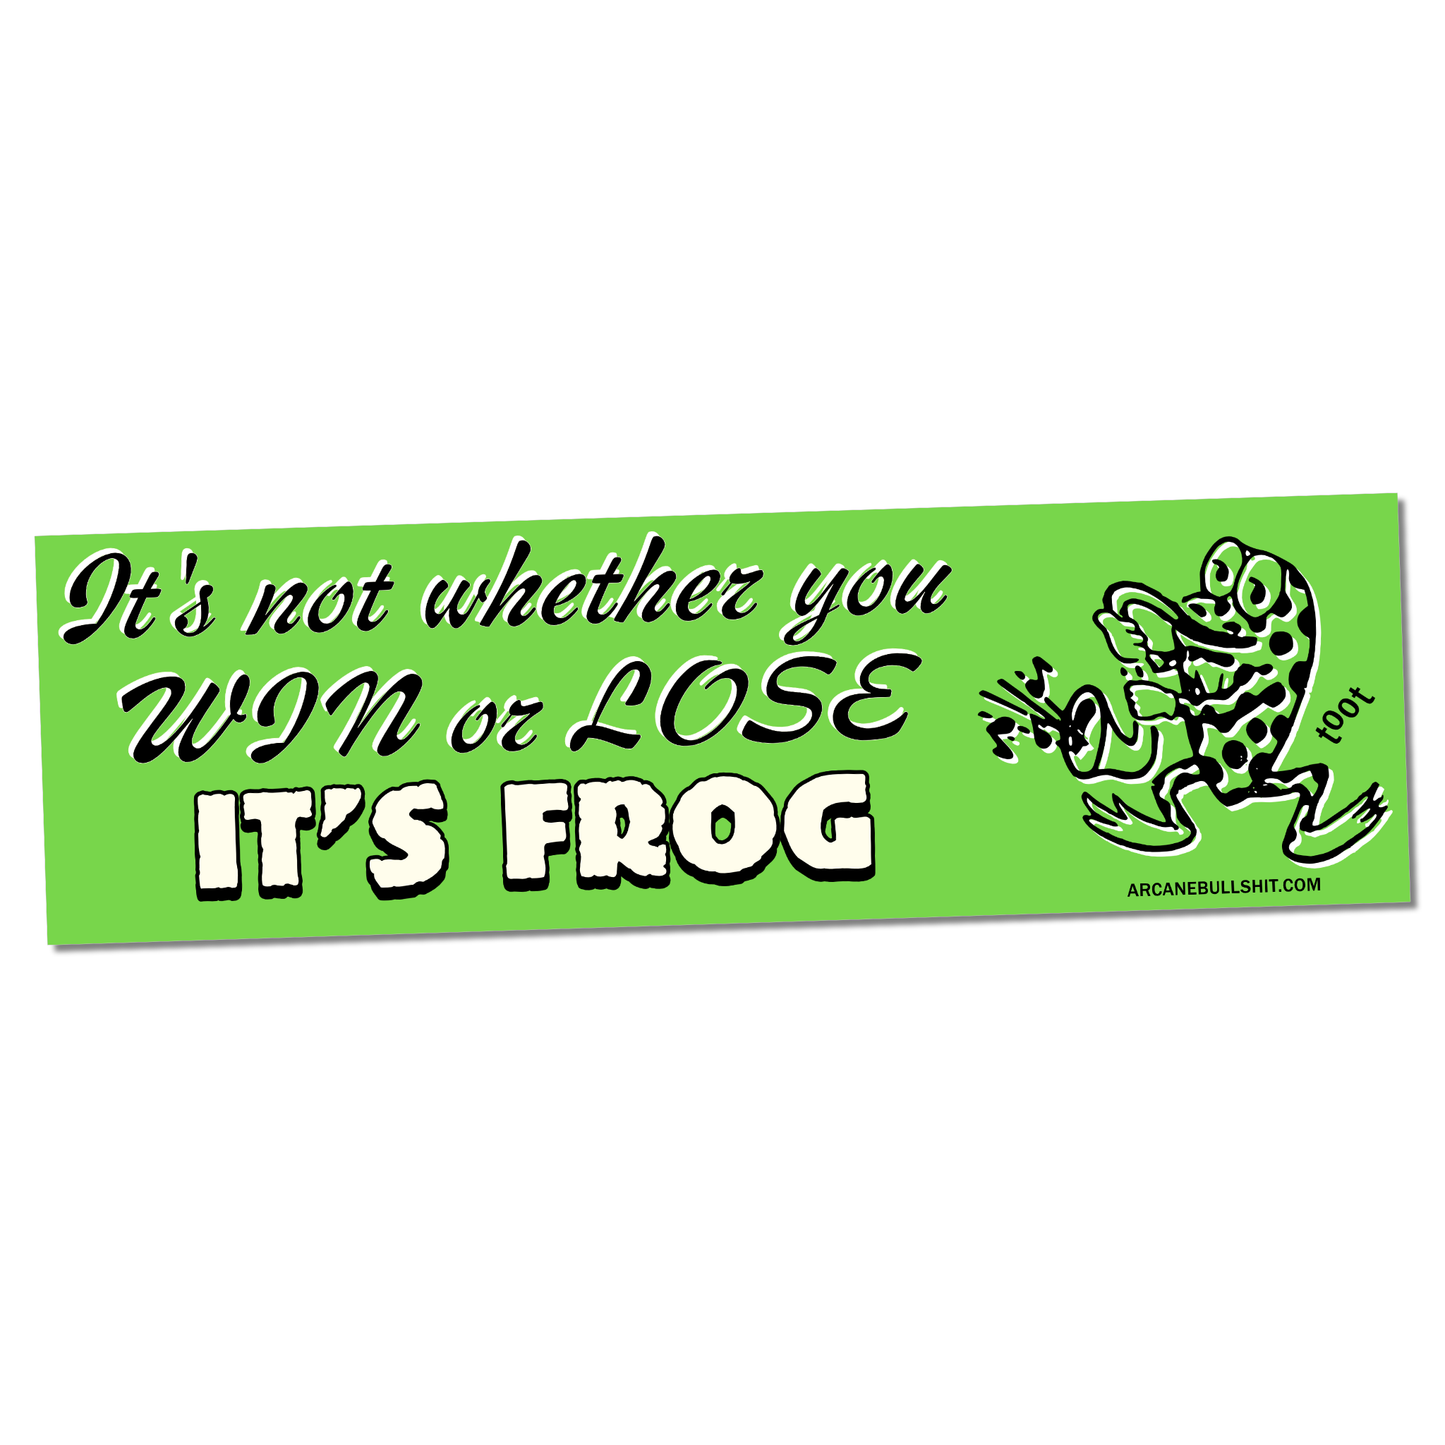 "It's Frog" bumper sticker